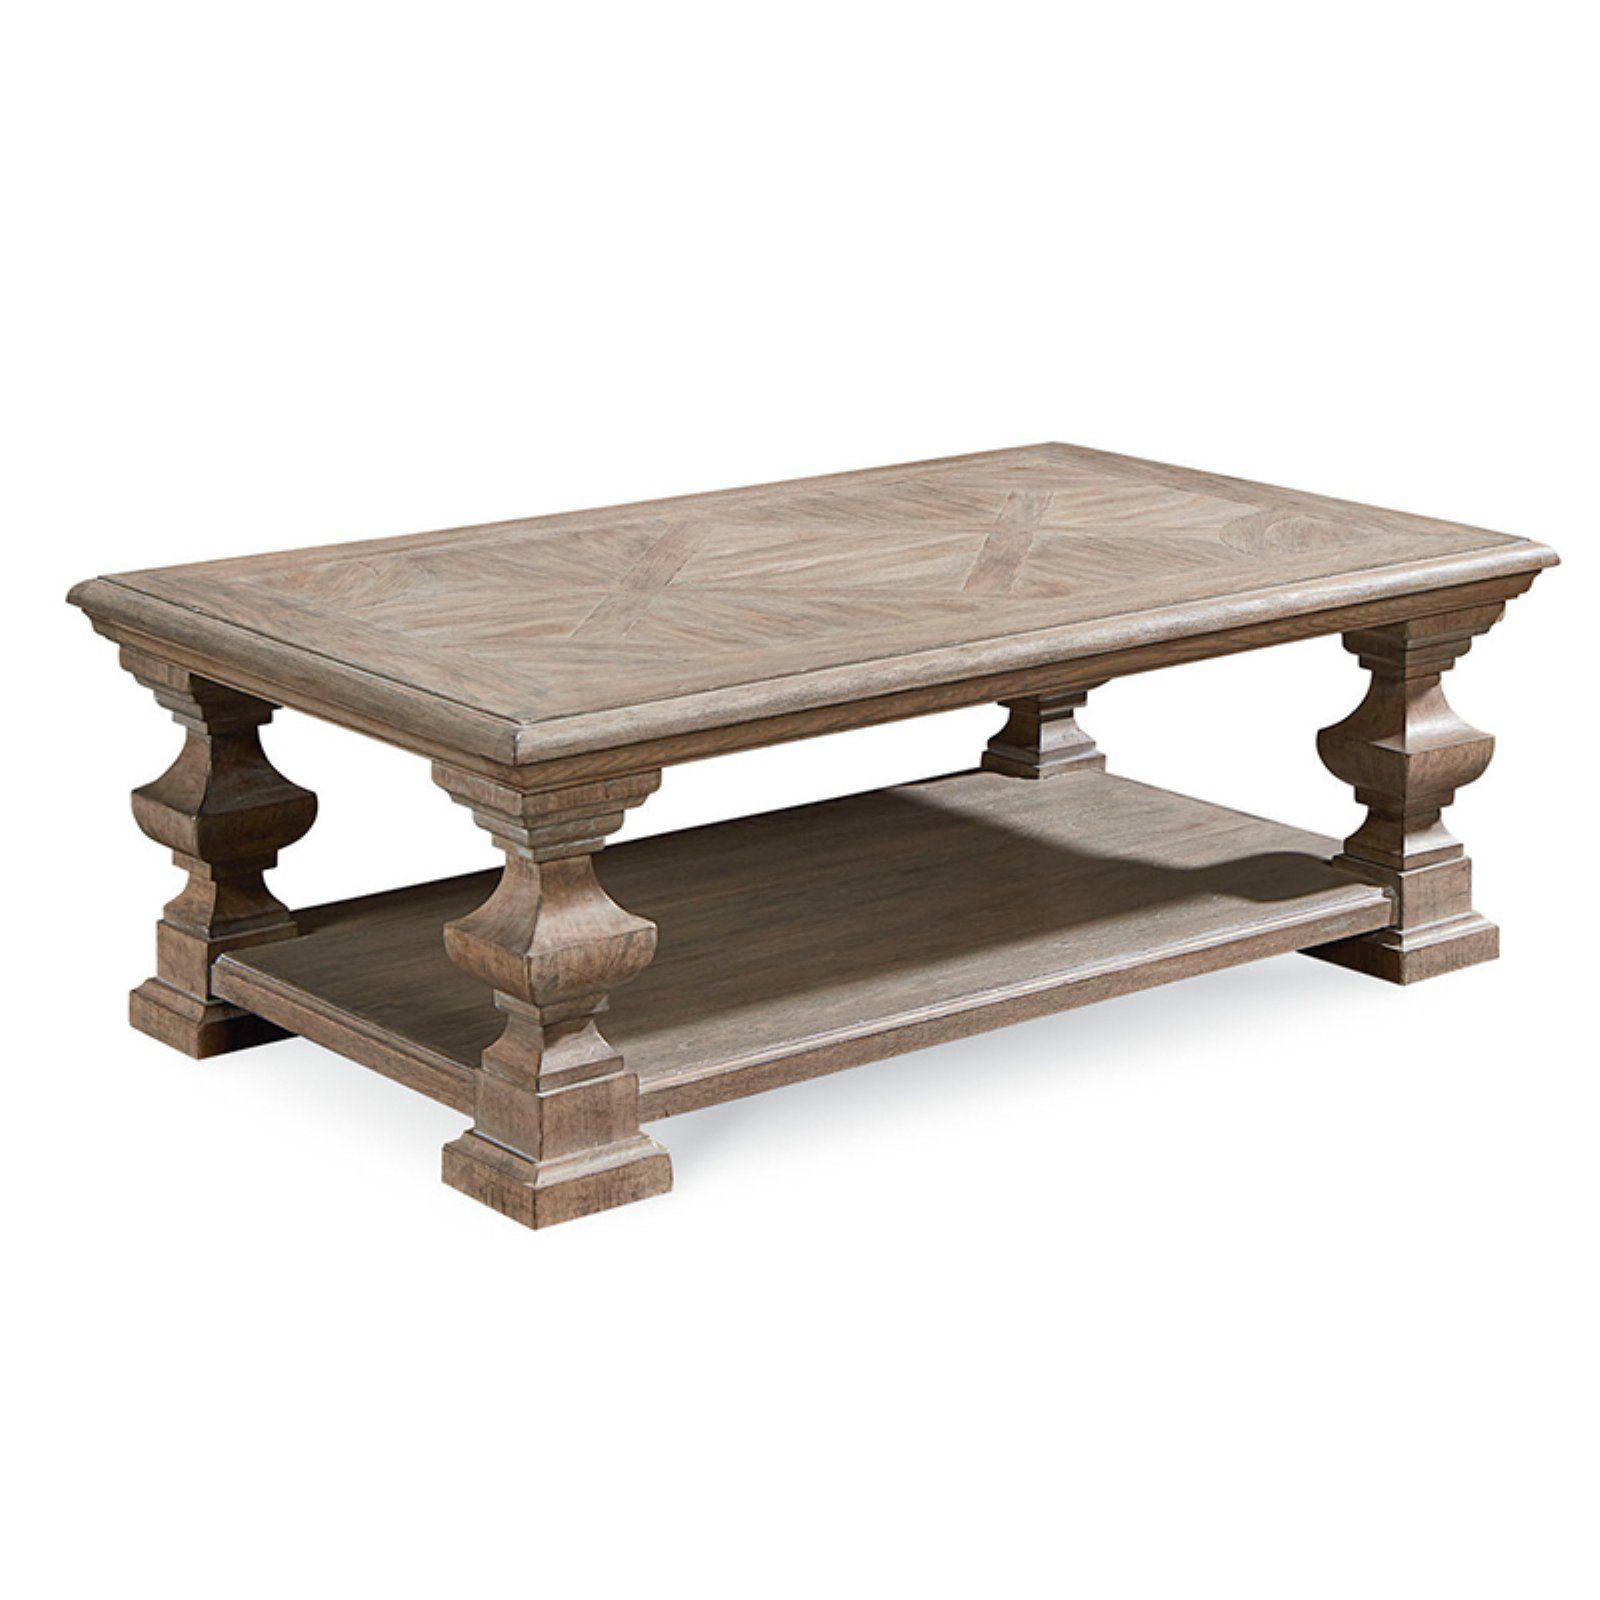 Деревянные журнальные столики фото: деревянный стол из массива дуба, березы, мебель из сундука, резные изделия в интерьере